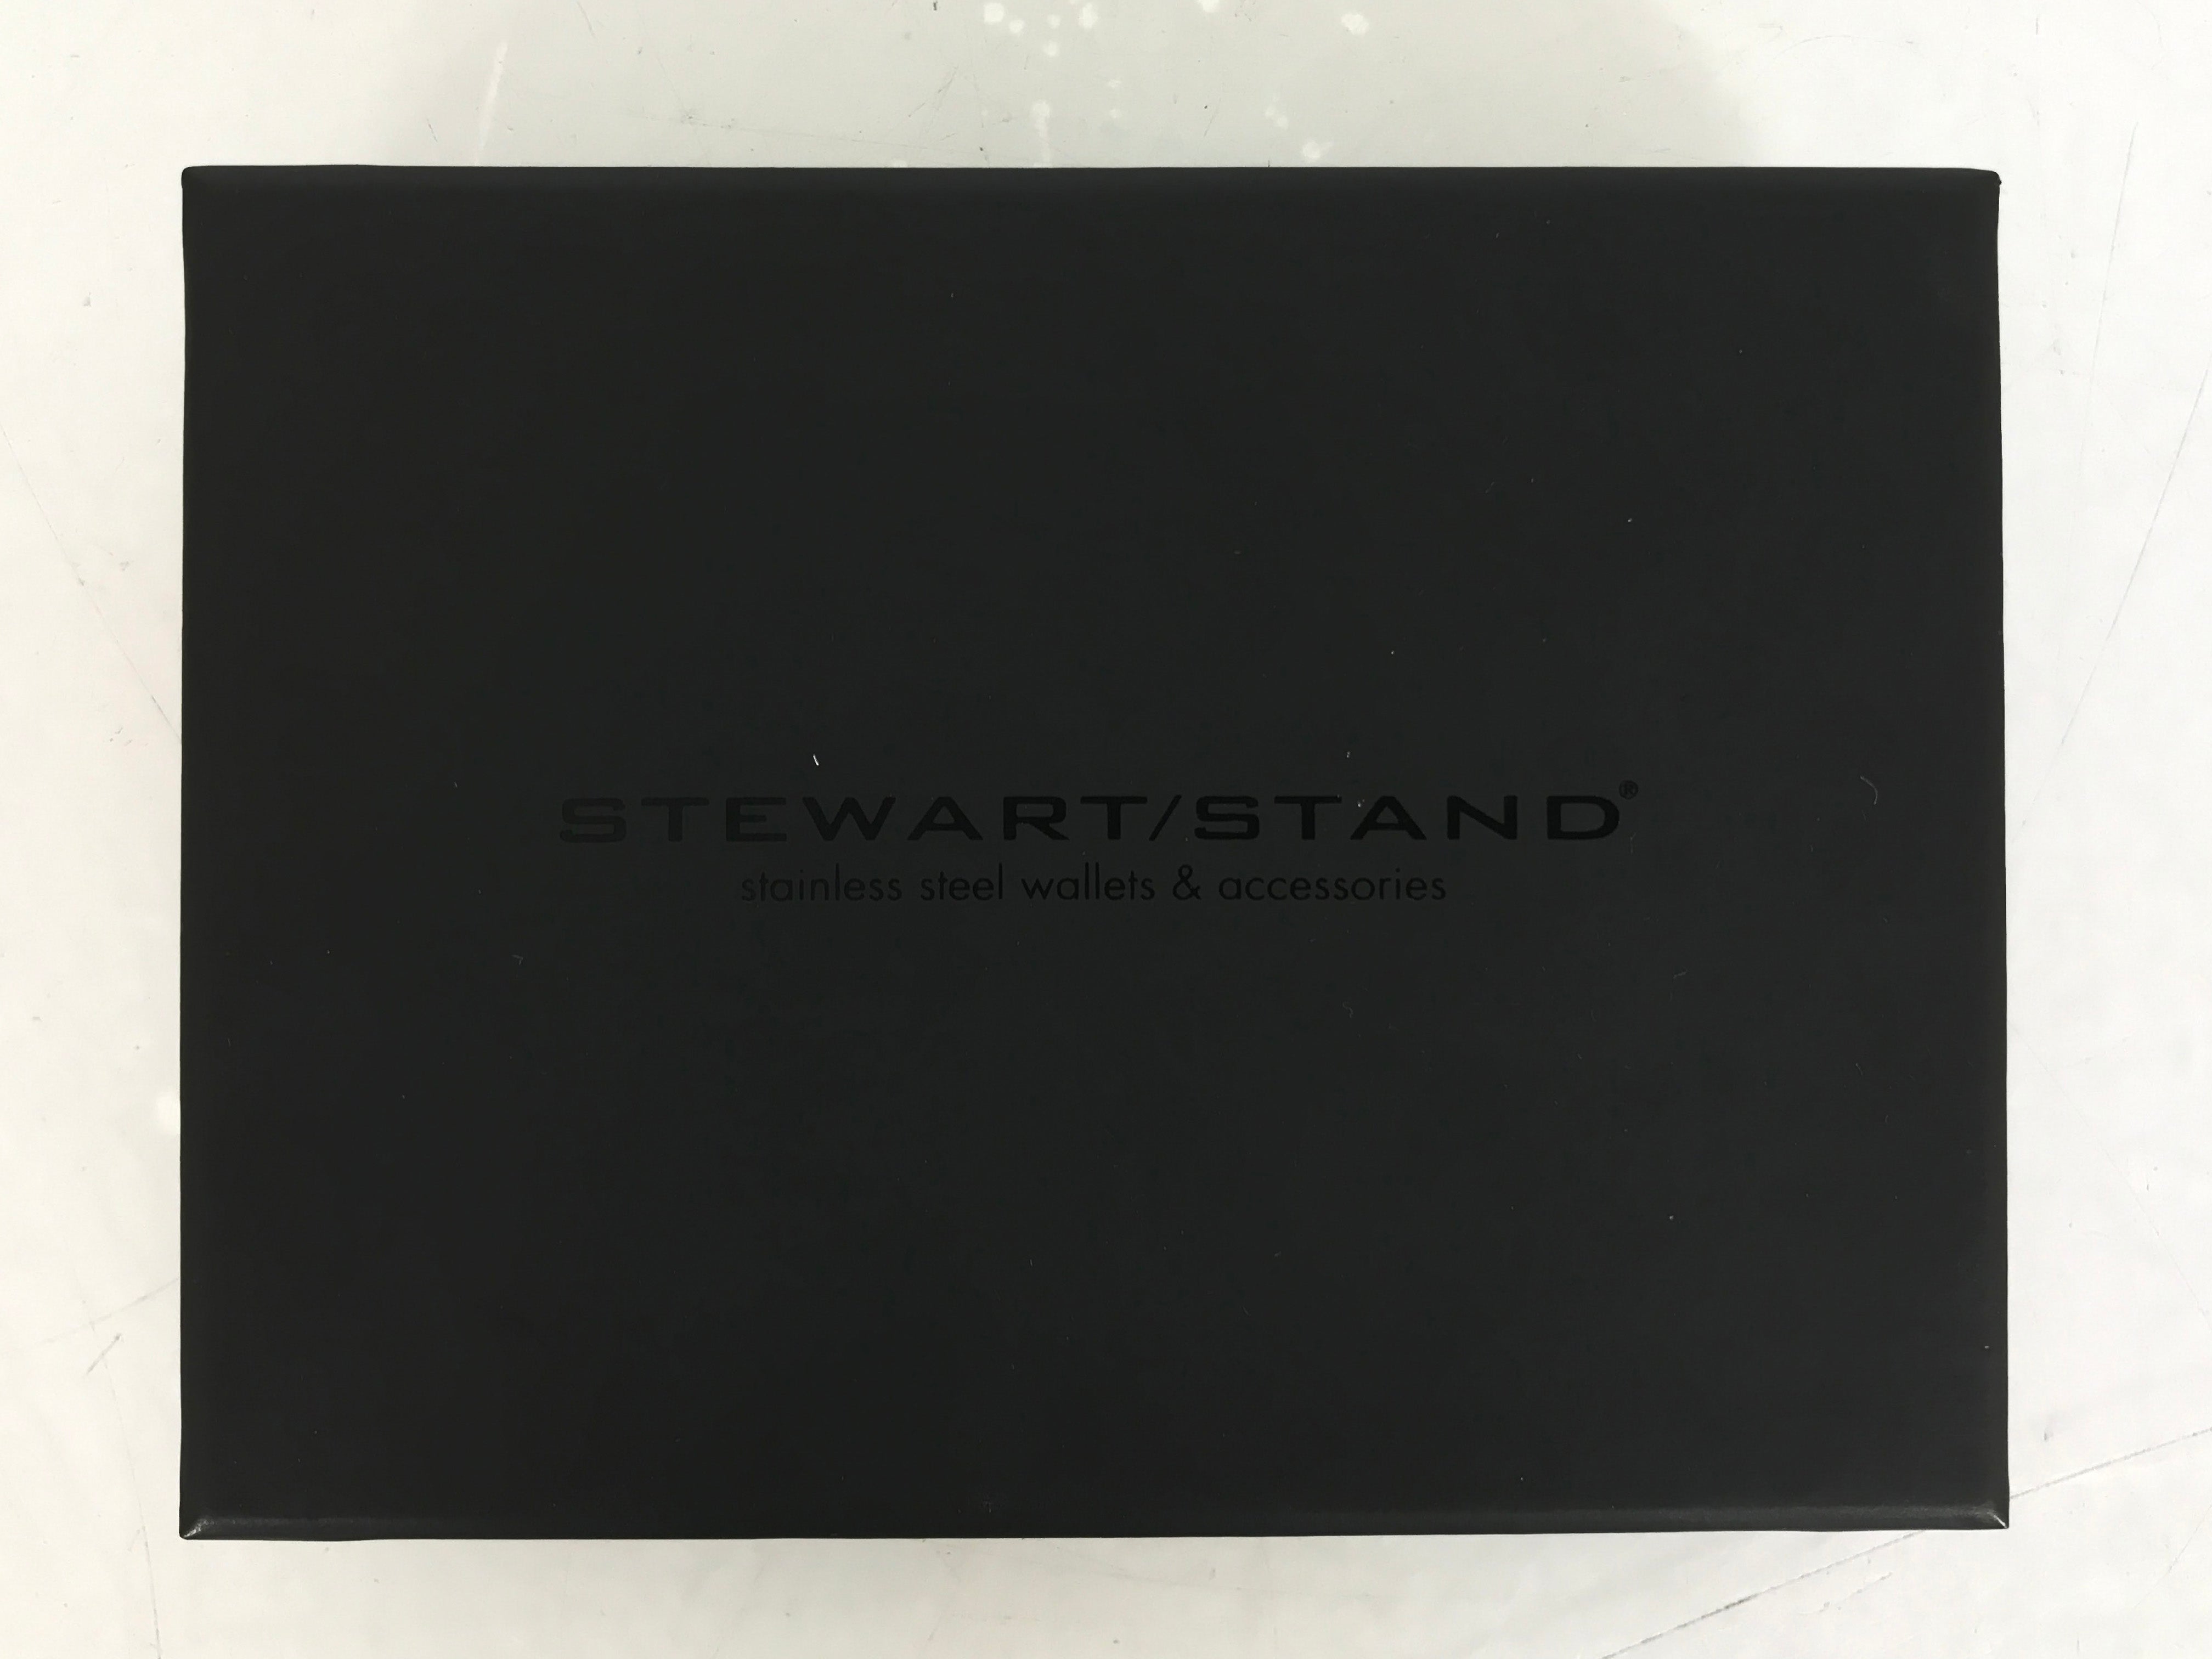 Stewart Stand Silver/Grey Alligator Passport Wallet